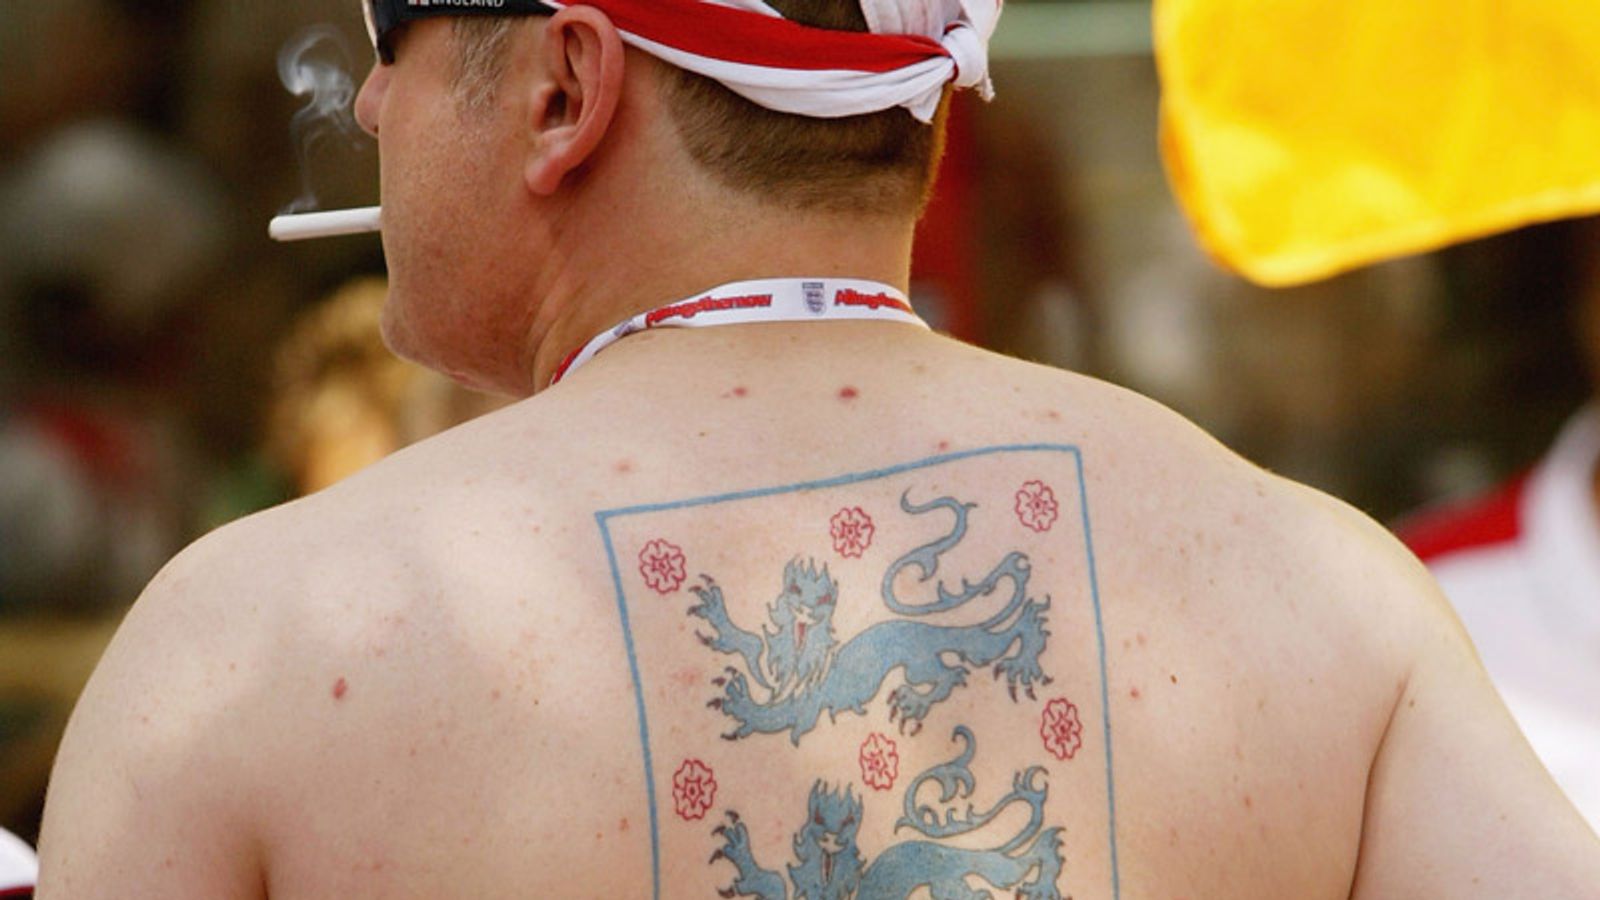 Arsenal tattoo by lukatattoo on DeviantArt | Arsenal tattoo, Sleeve tattoos,  Tattoos